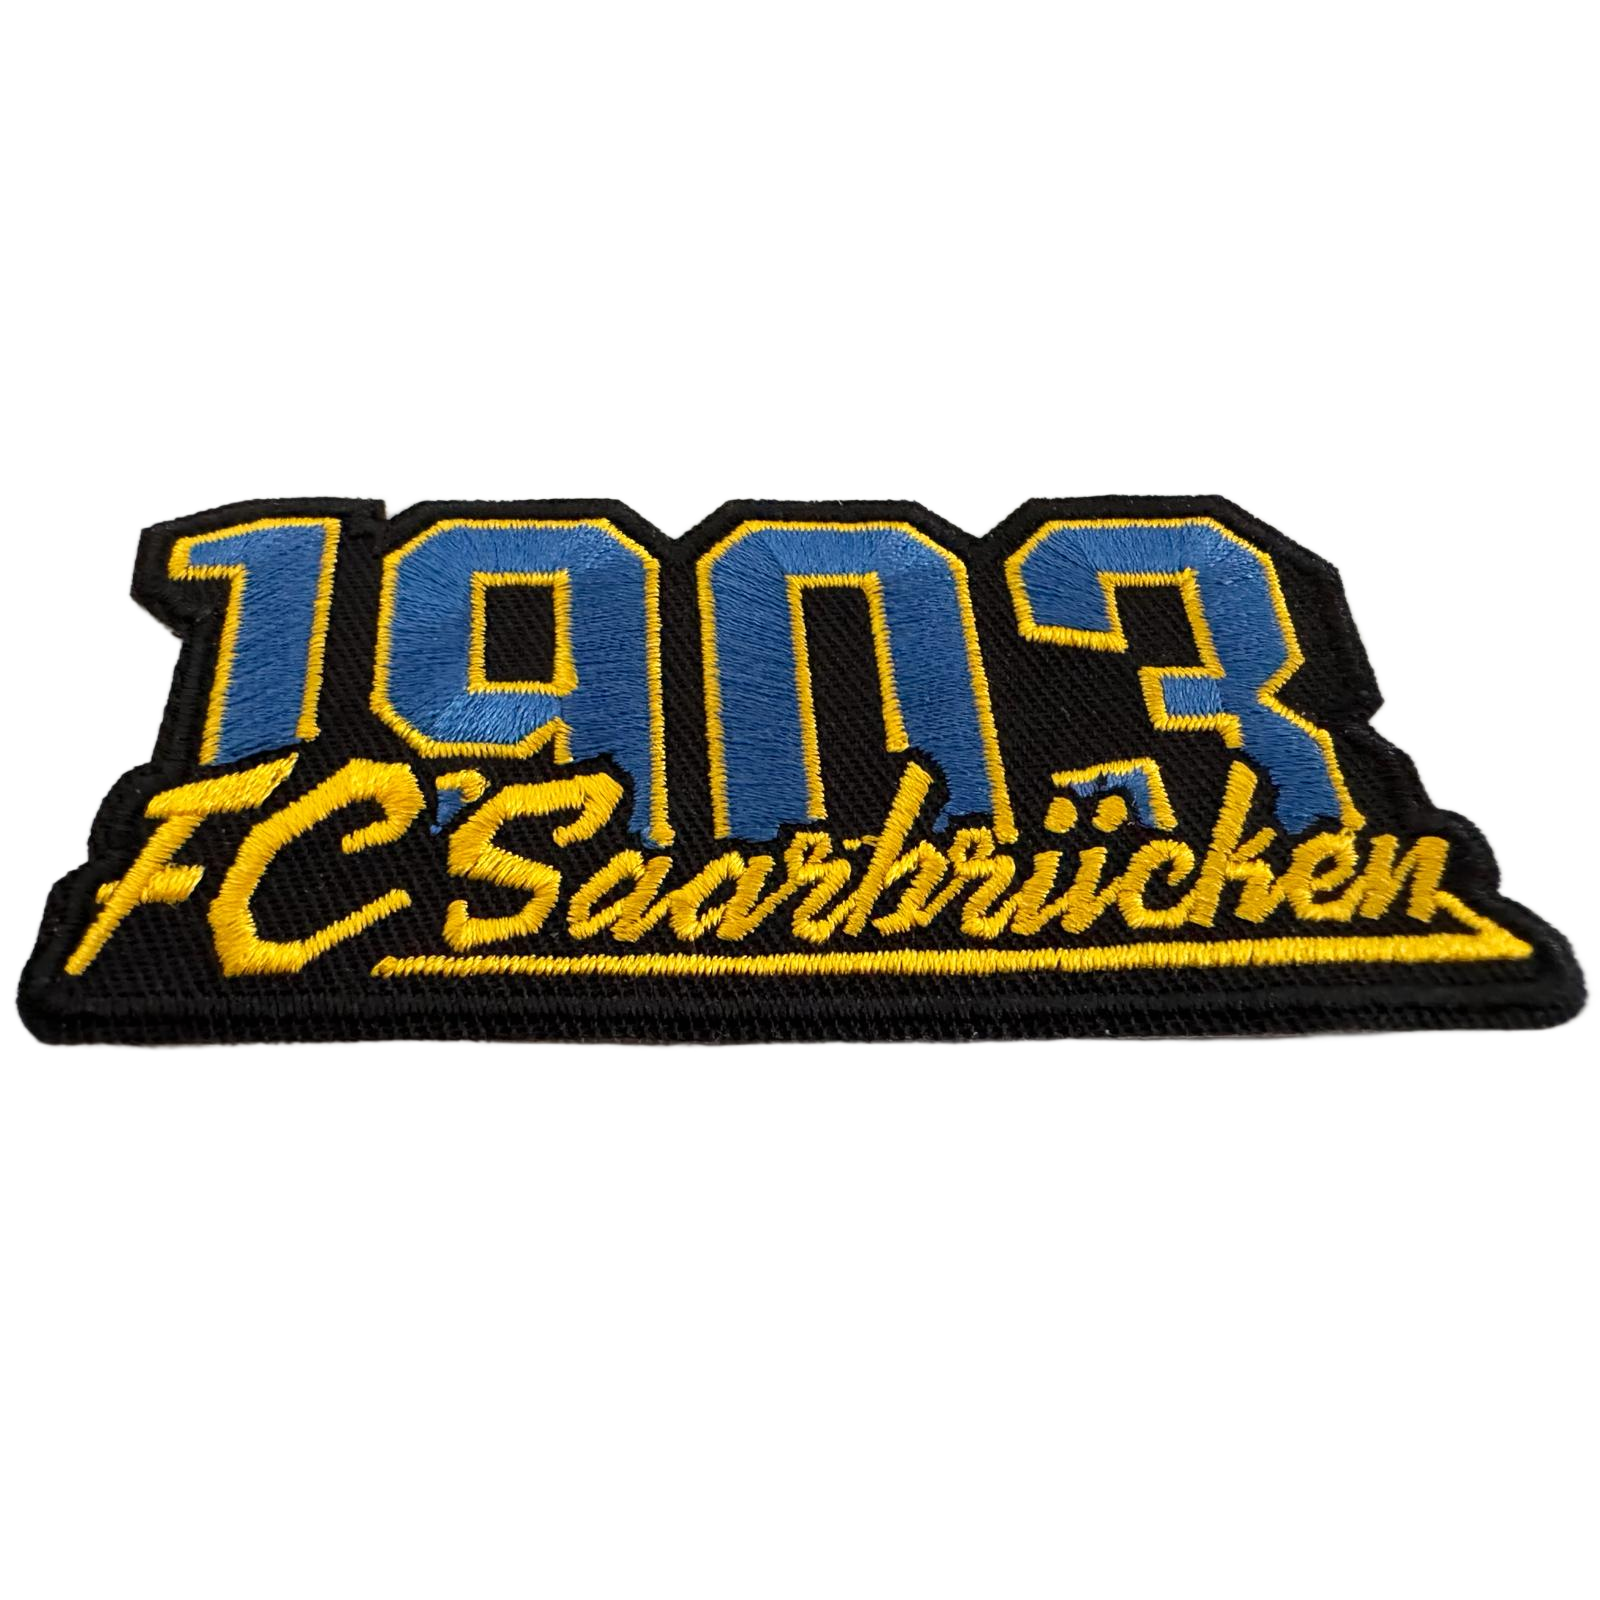 FCS-Aufnäher "1903 FC Saarbrücken"